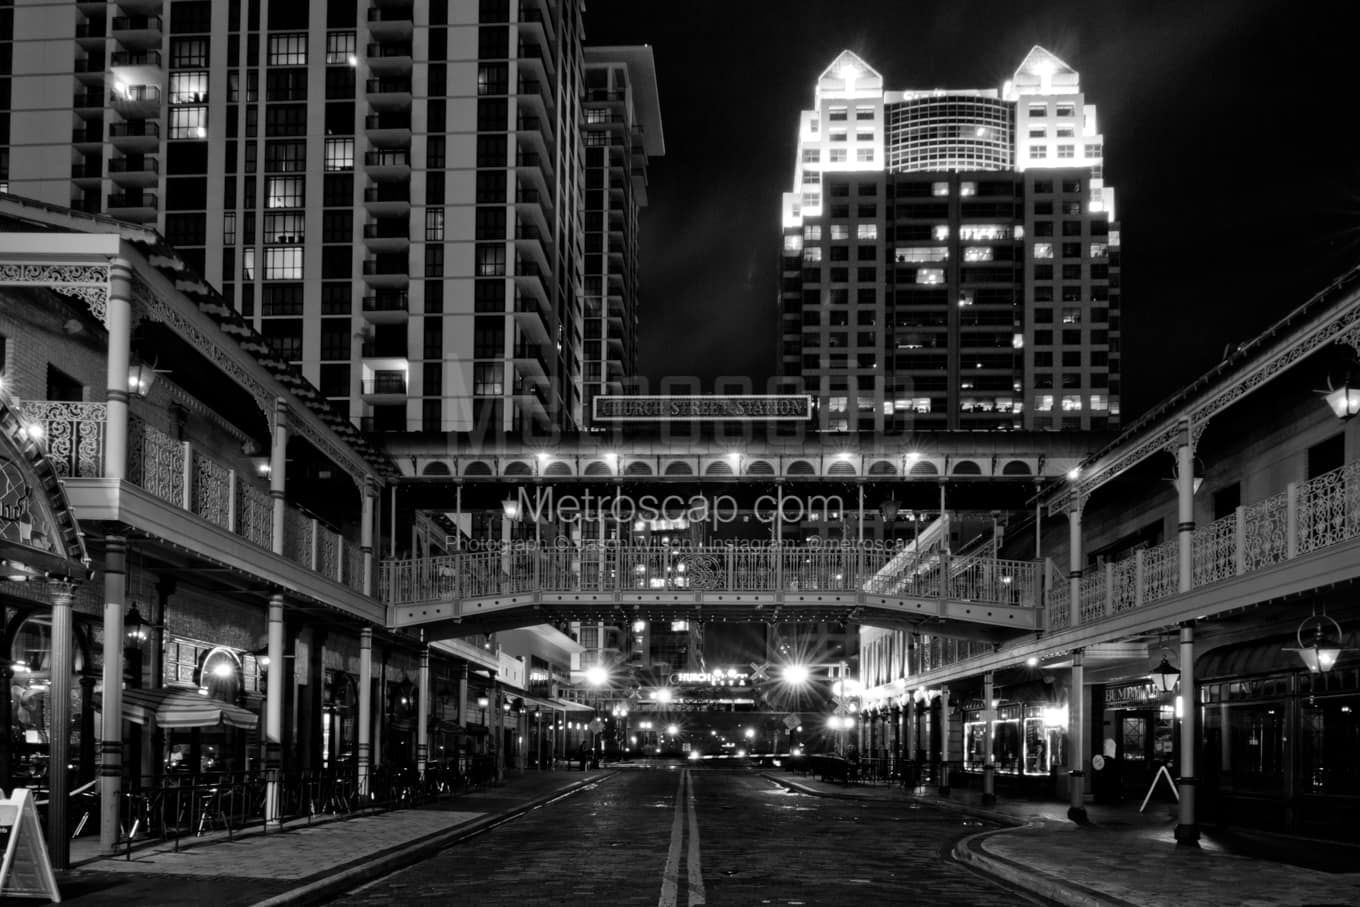 Black & White Orlando Architecture Pictures